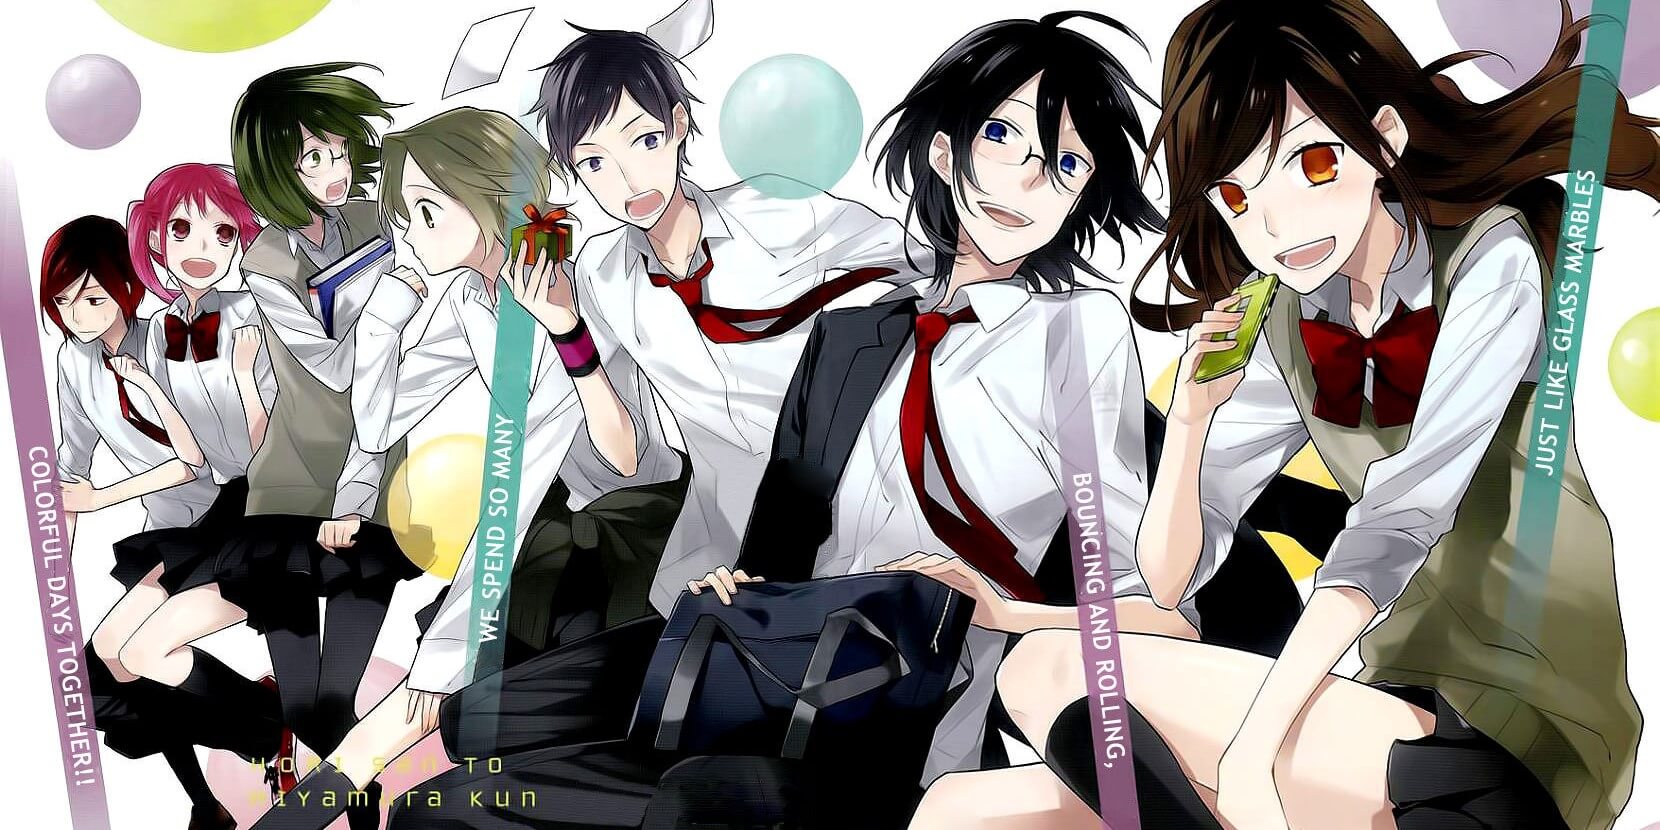 Horimiya – Anime revela Poster Promocional com Personagens